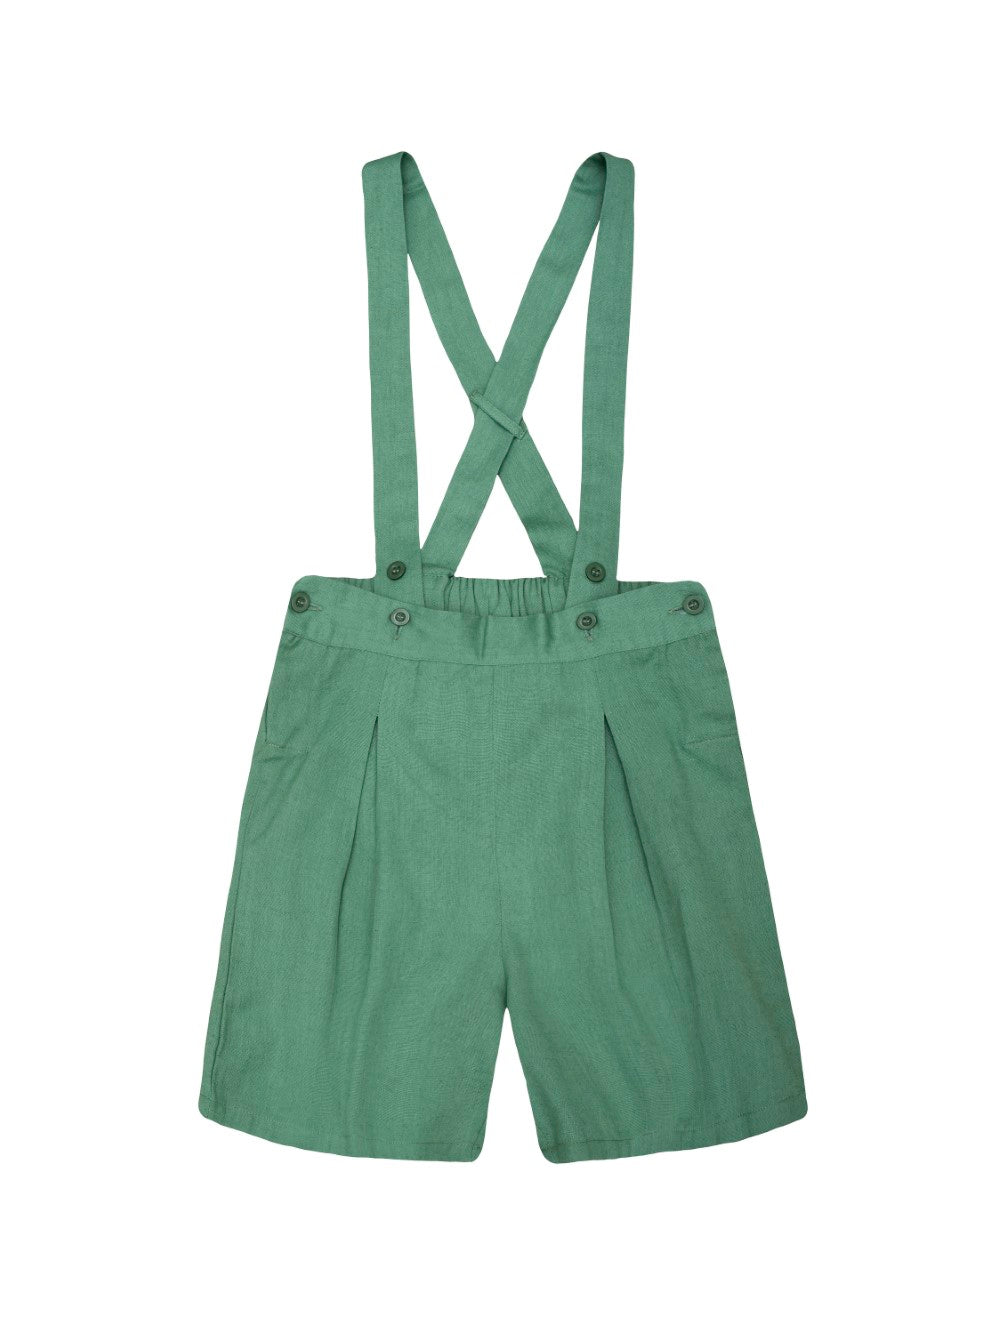 Green Suspender Shorts